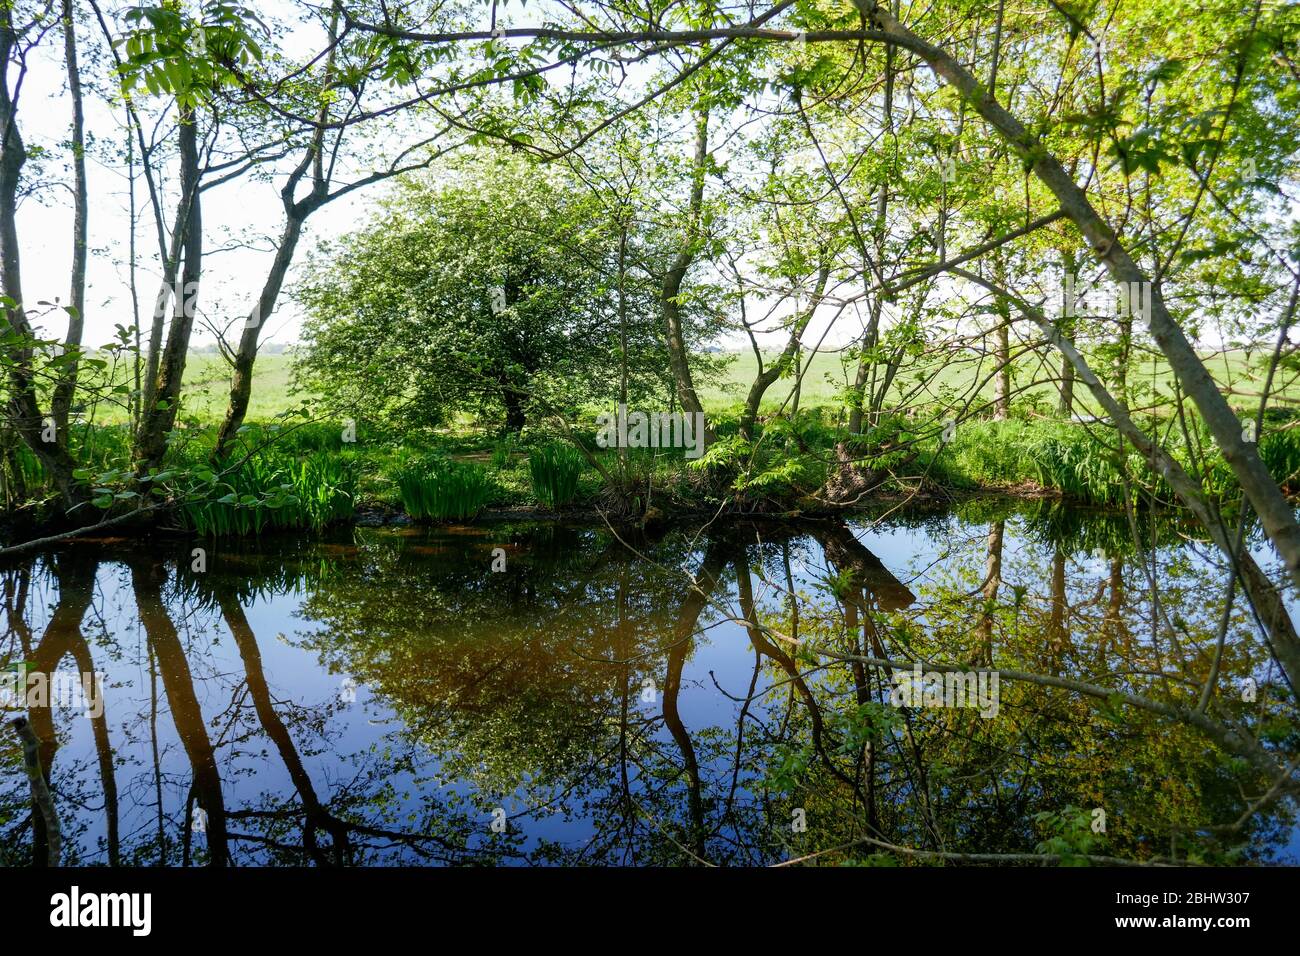 Paysage riche en eau et terres agricoles historiques 'het groene hart' à l'ouest des Pays-Bas Banque D'Images